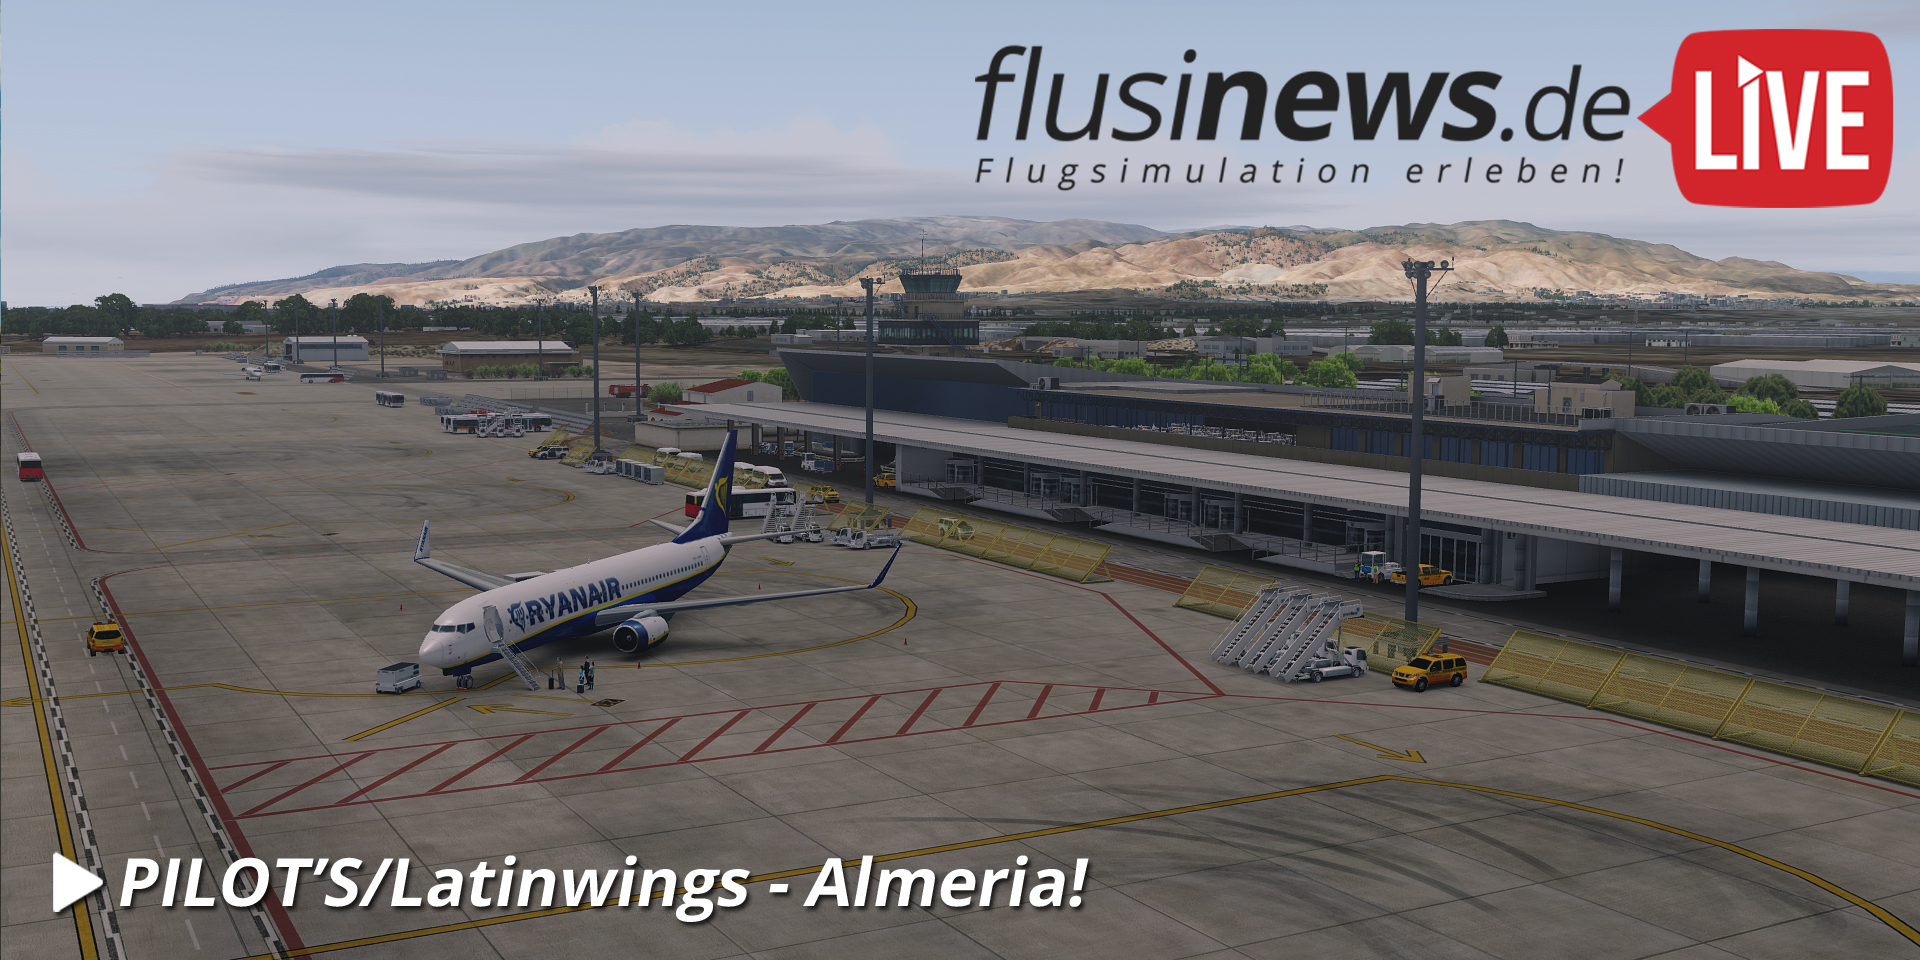 fndelive_pilots-latinwings_almeria01.jpg